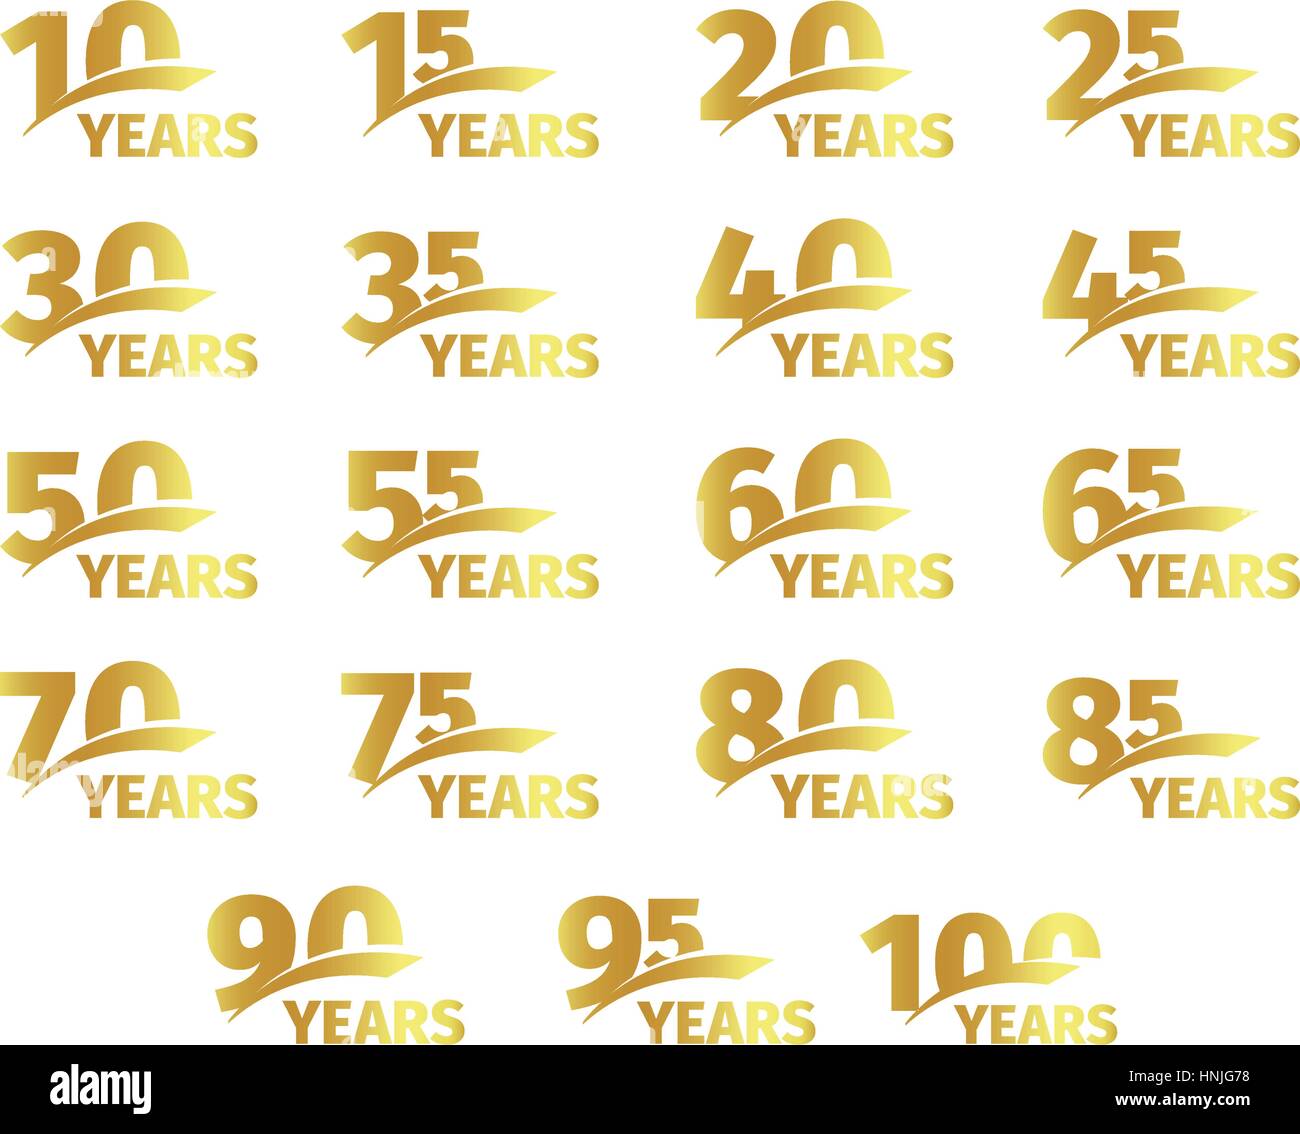 Isolierte goldener Farbe Zahlen mit Wort Jahre Symbolsammlung auf weißem Hintergrund, Geburtstag Geburtstag Grußkarte Elemente legen Sie Vektor-Illustration. Stock Vektor